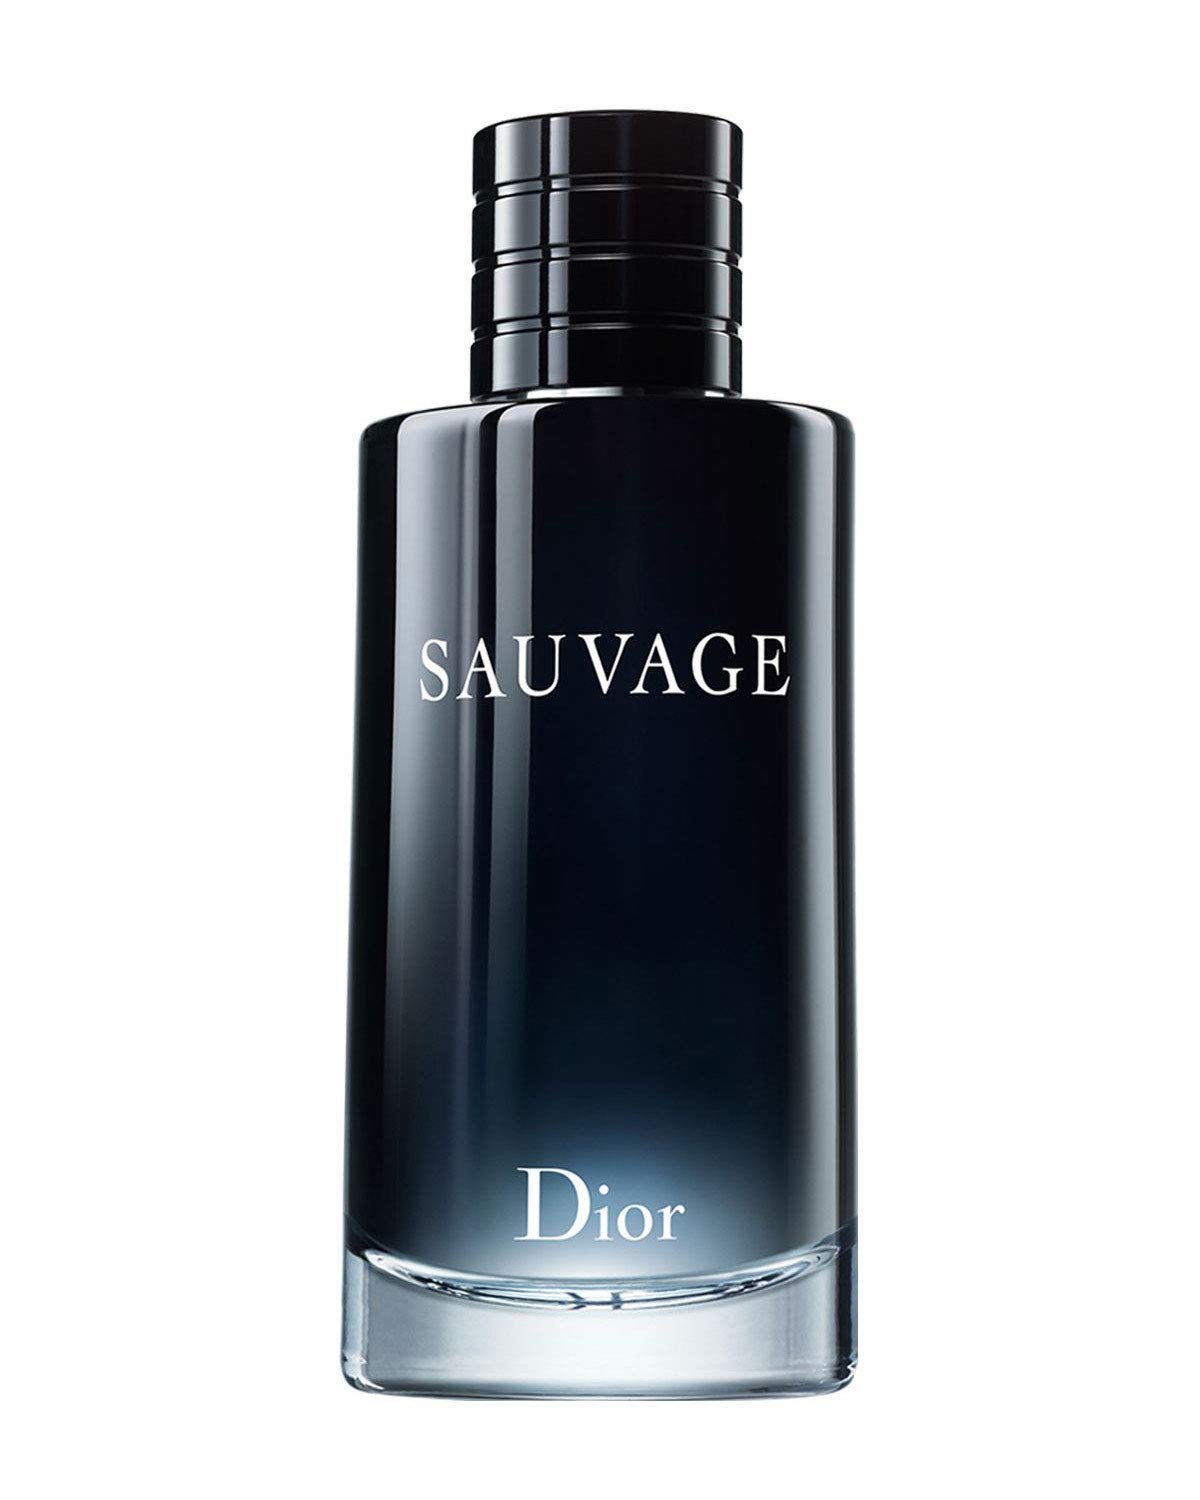 دیور ساواج Dior Sauvage – فروشگاه اینترینتی شارلوت گالری